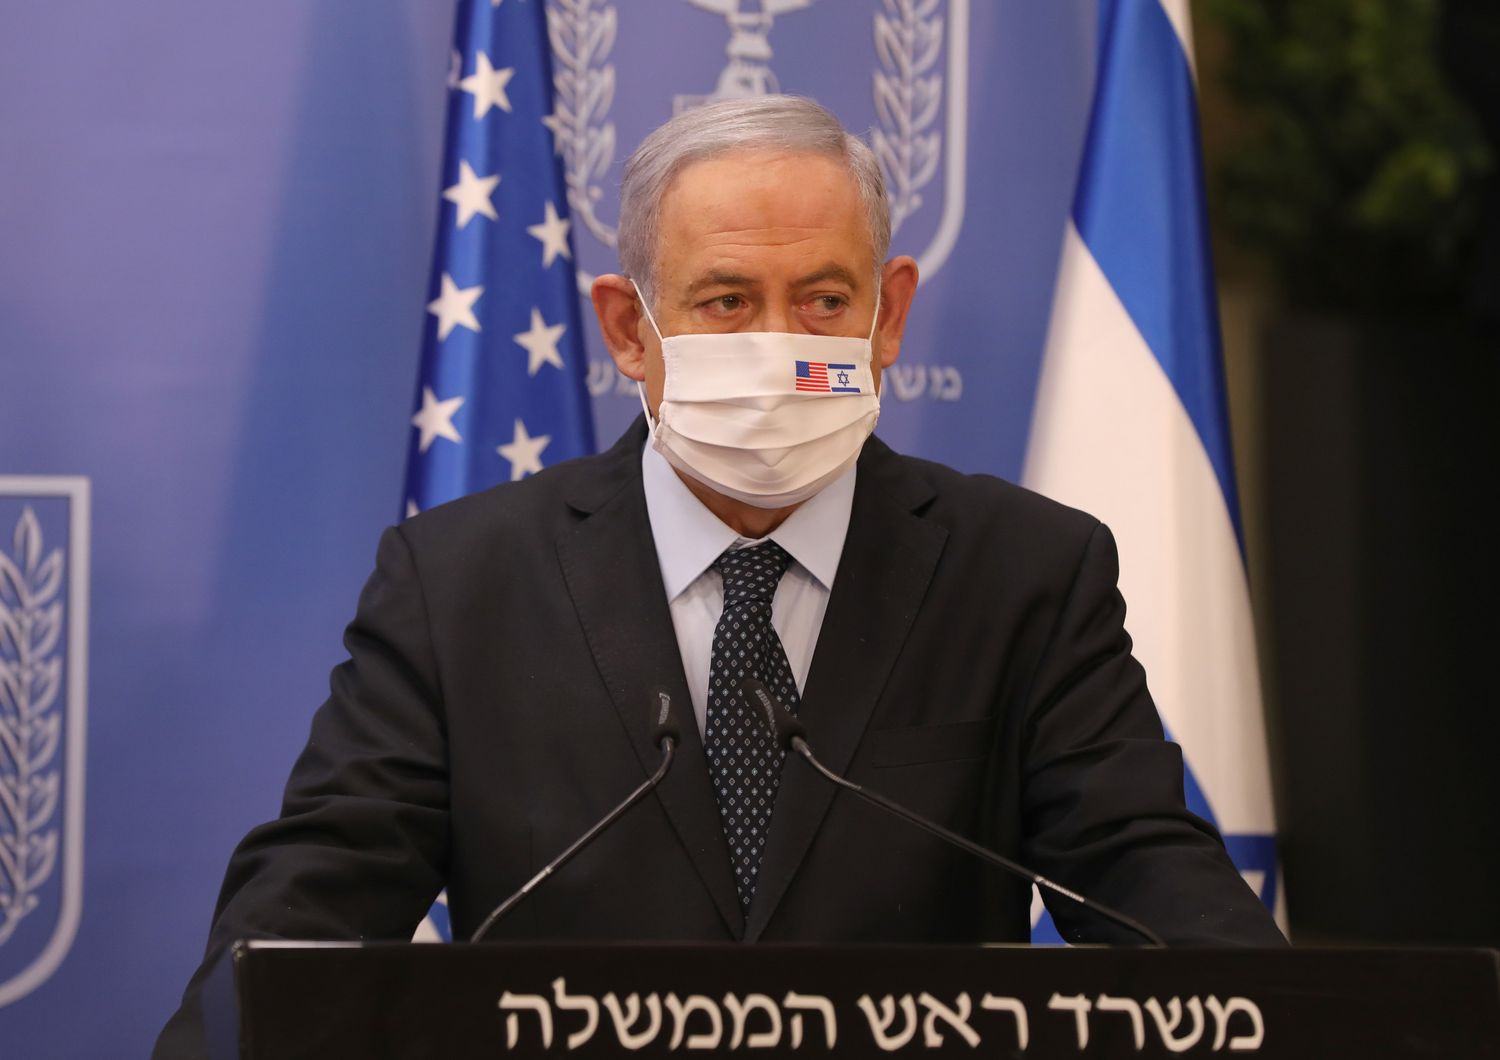 &nbsp;Benjamin Netanyahu